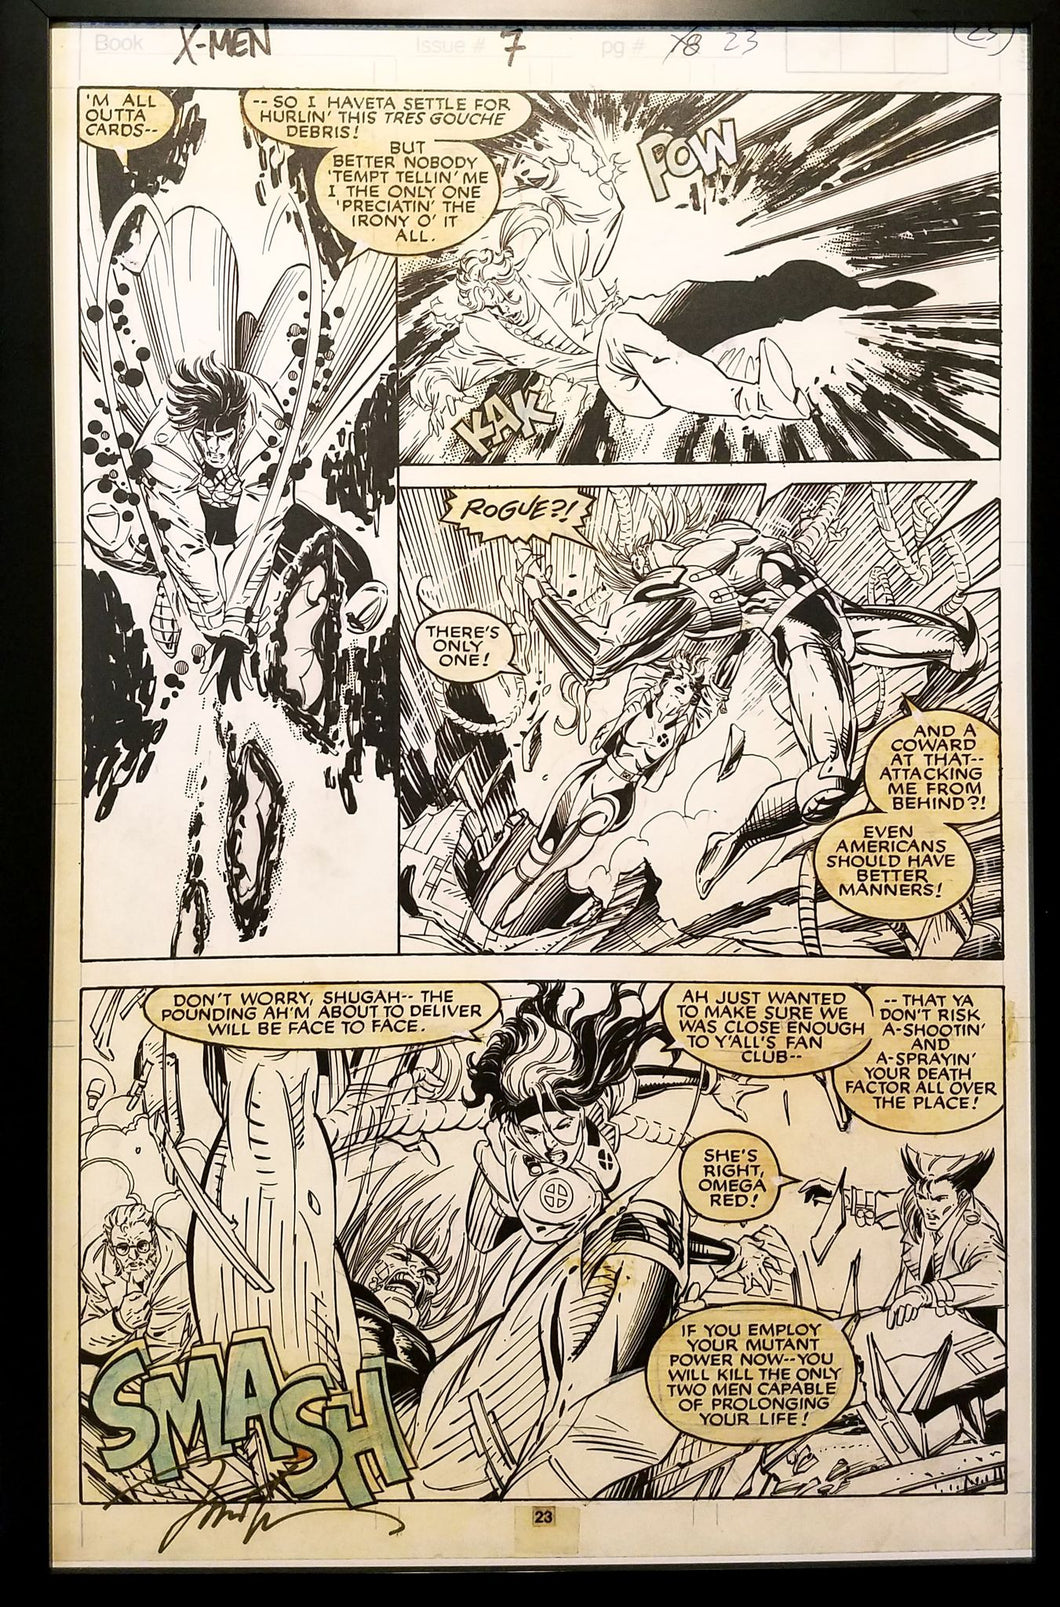 X-Men #7 pg. 23 Rogue Jim Lee 11x17 FRAMED Original Art Poster Marvel Comics